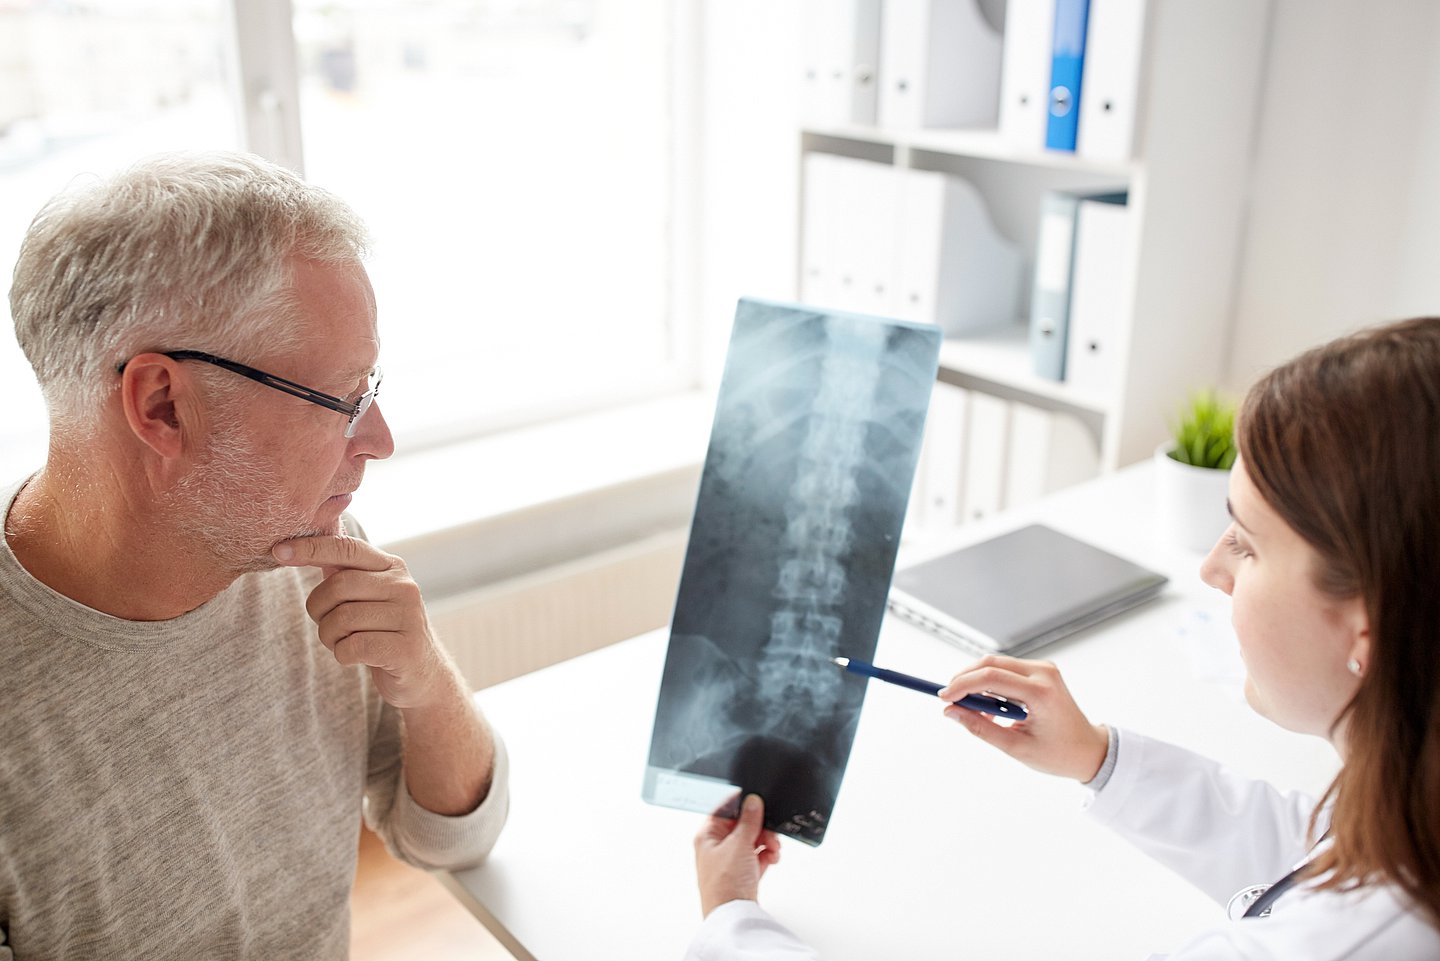 Foto zeigt ein Arzt-Patientengespräch, bei der eine Ärztin einem Patienten ein Röntgenbild mit einer Wirbelsäule zeigt und erklärt.